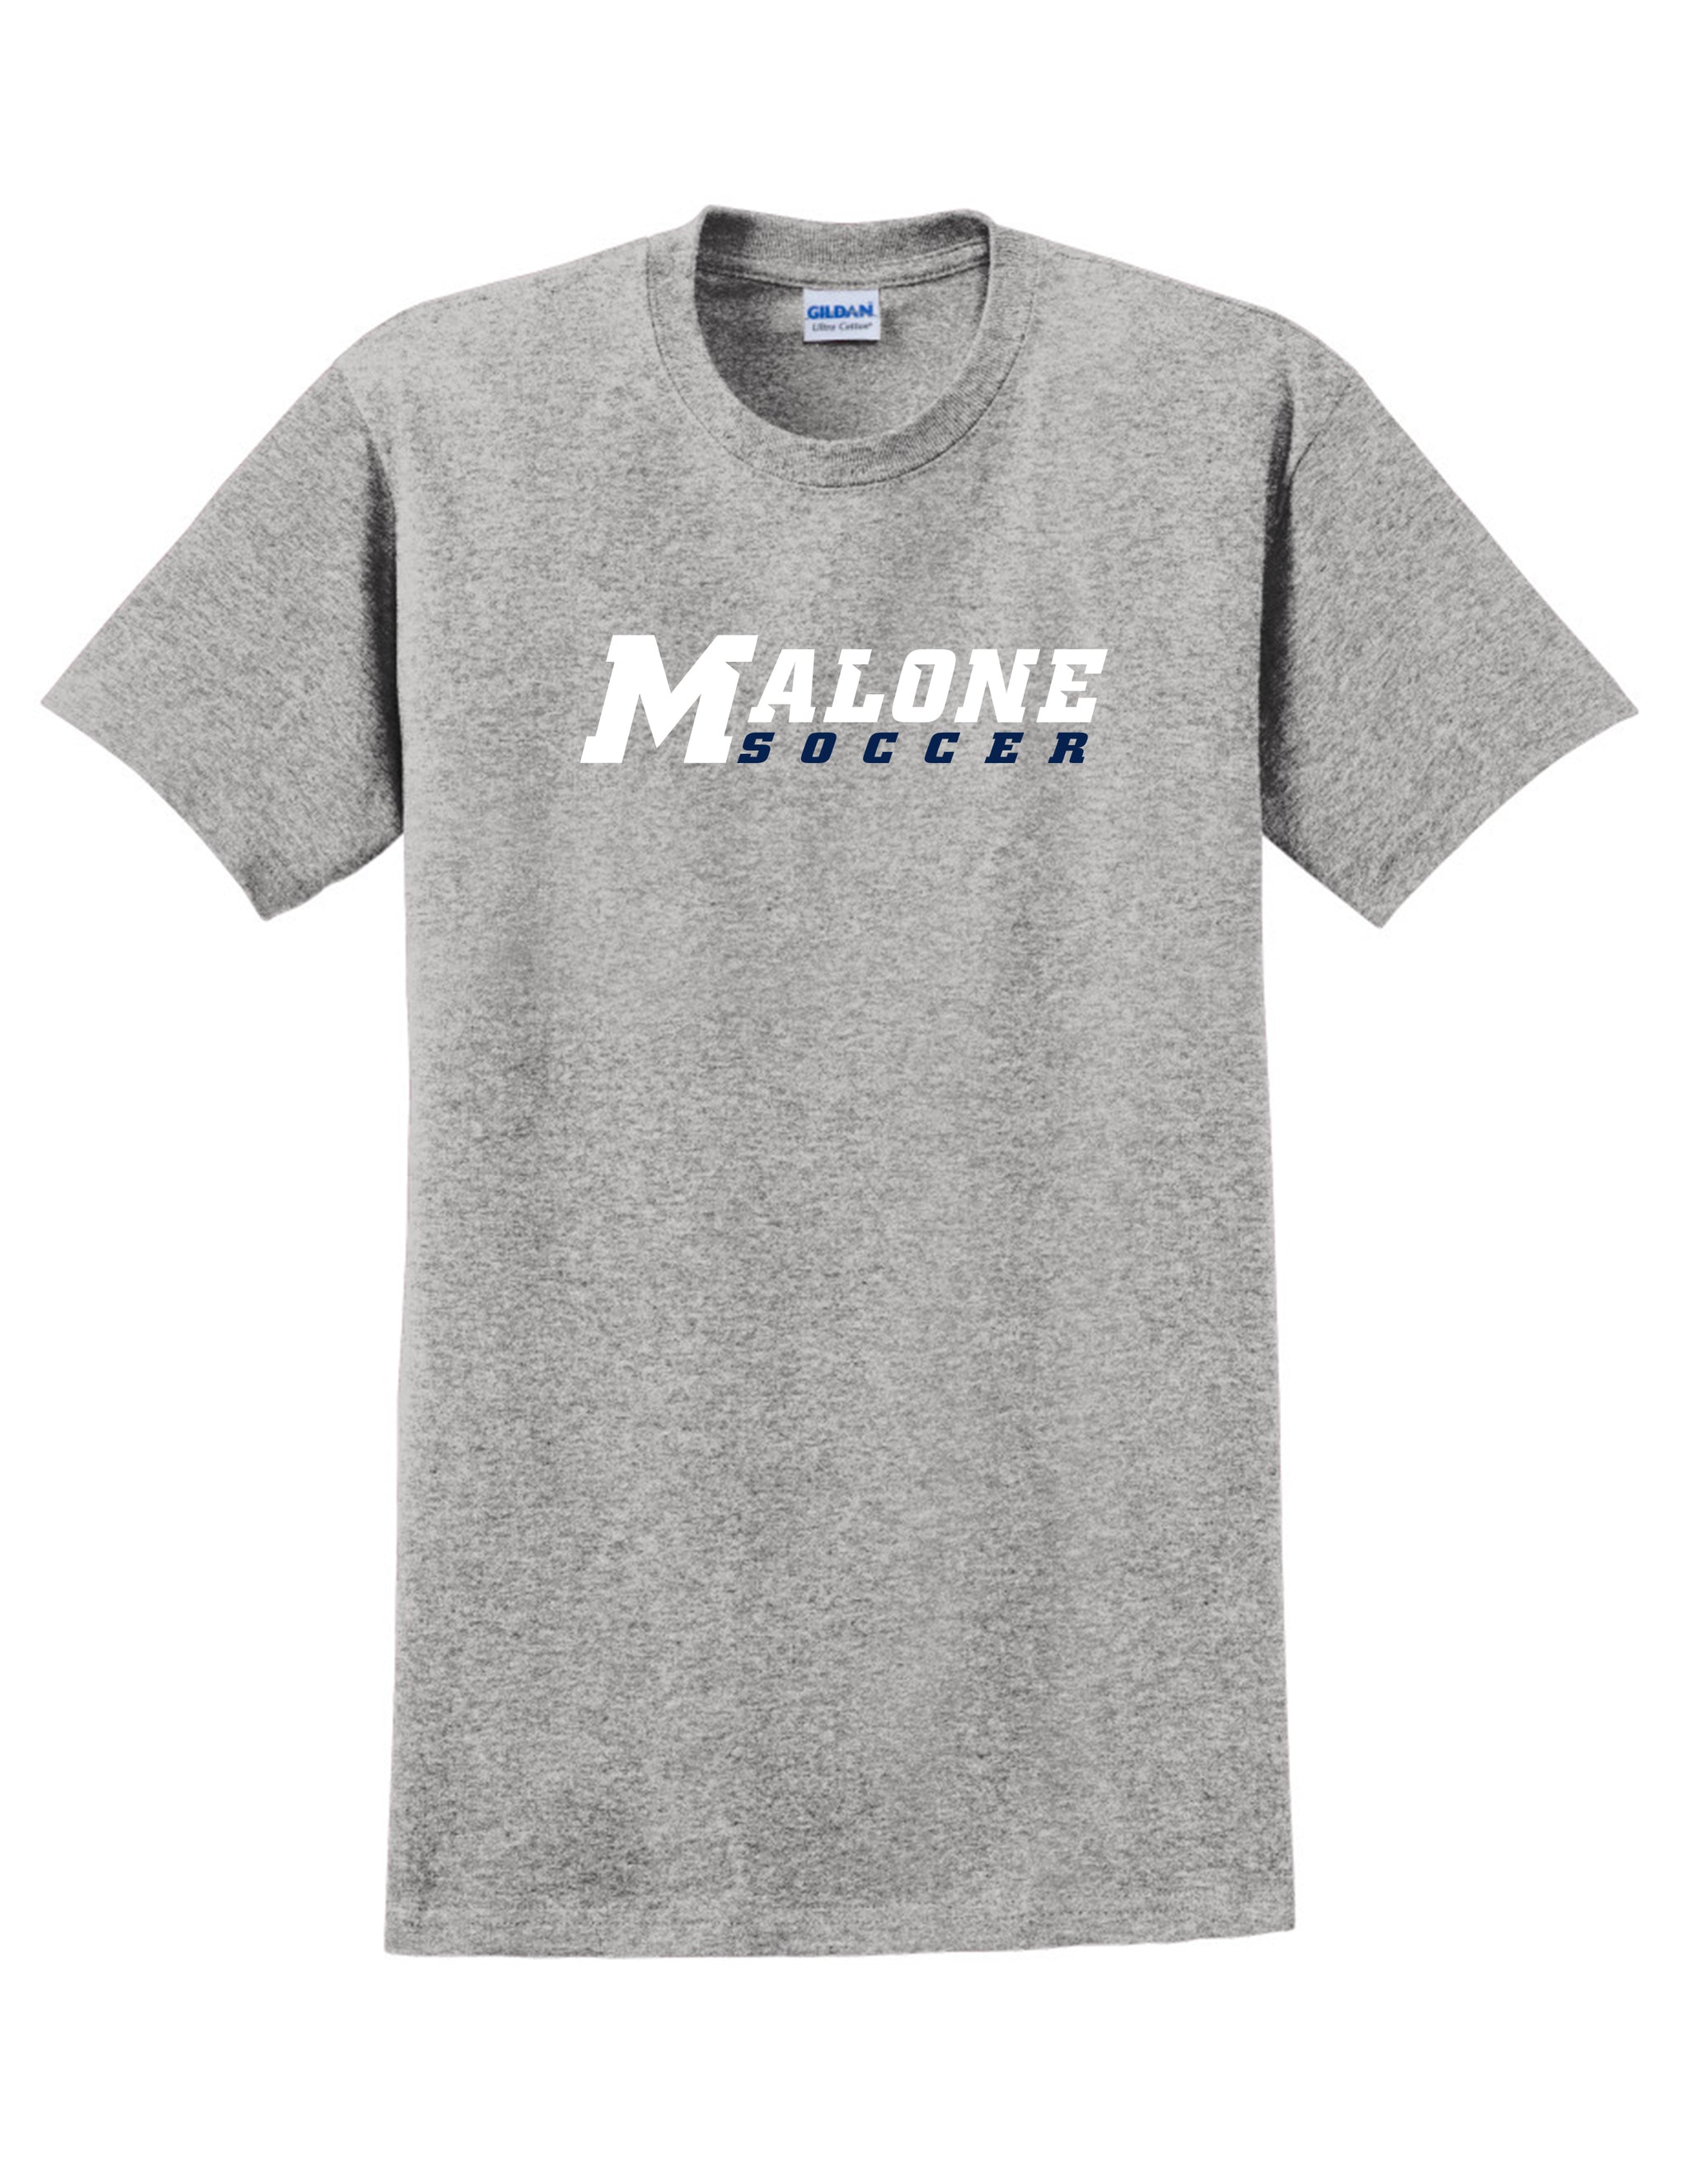 Malone Women's Soccer Men's T-Shirt